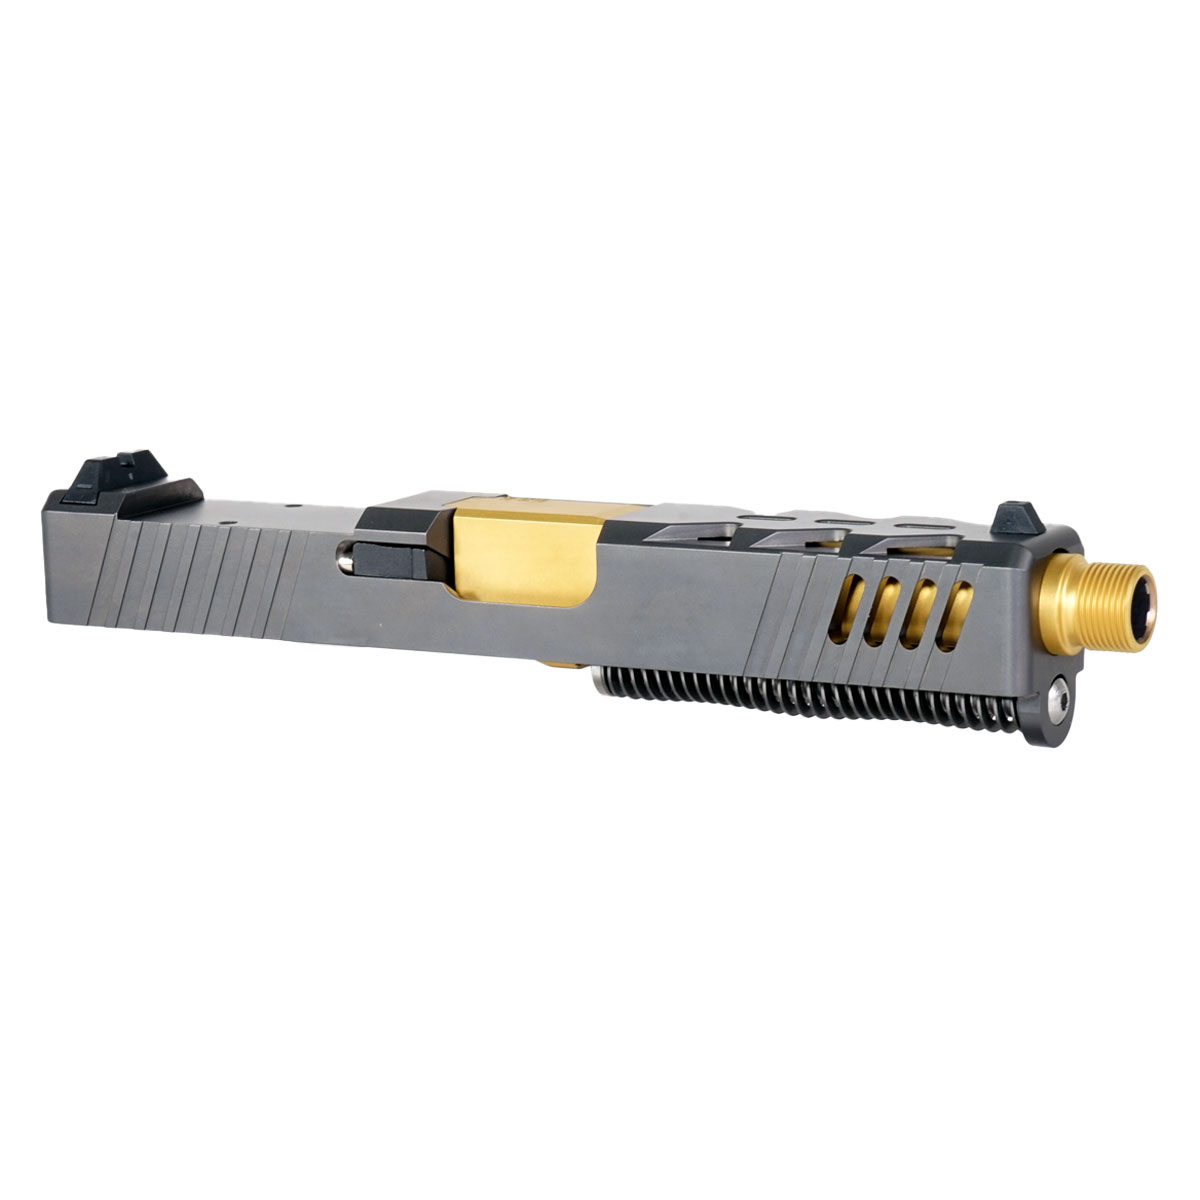 OTD 'The Rickster' 9mm Complete Slide Kit - Glock 19 Gen 1-3 Compatible